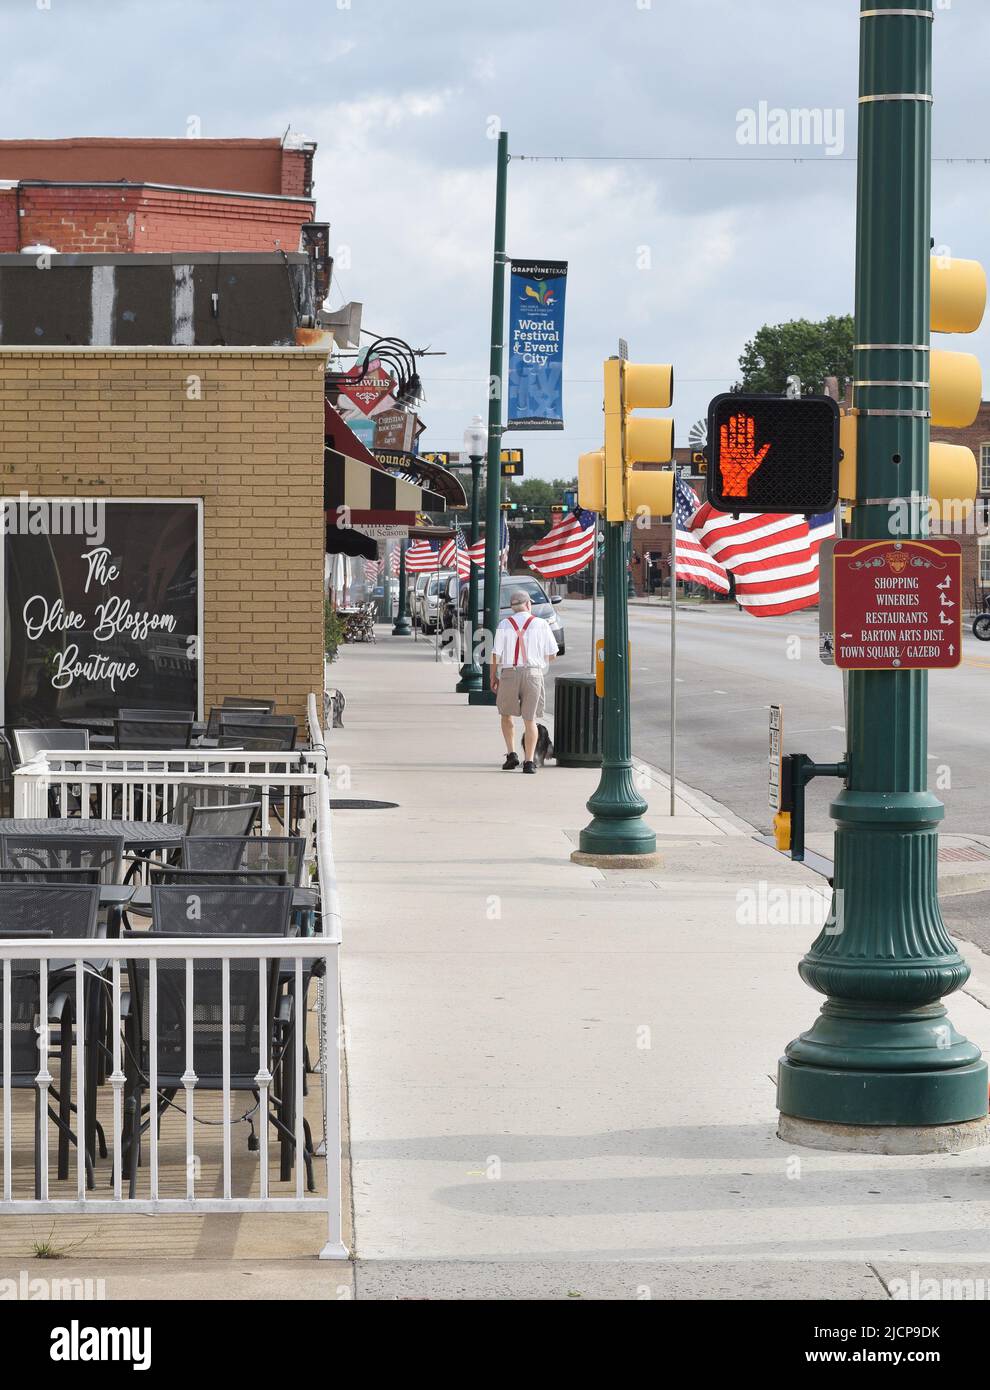 Un homme plus âgé qui marche son chien devant les drapeaux américains qui ornent main Street dans le centre-ville historique de Grapevine, Texas, le week-end du Memorial Day Banque D'Images